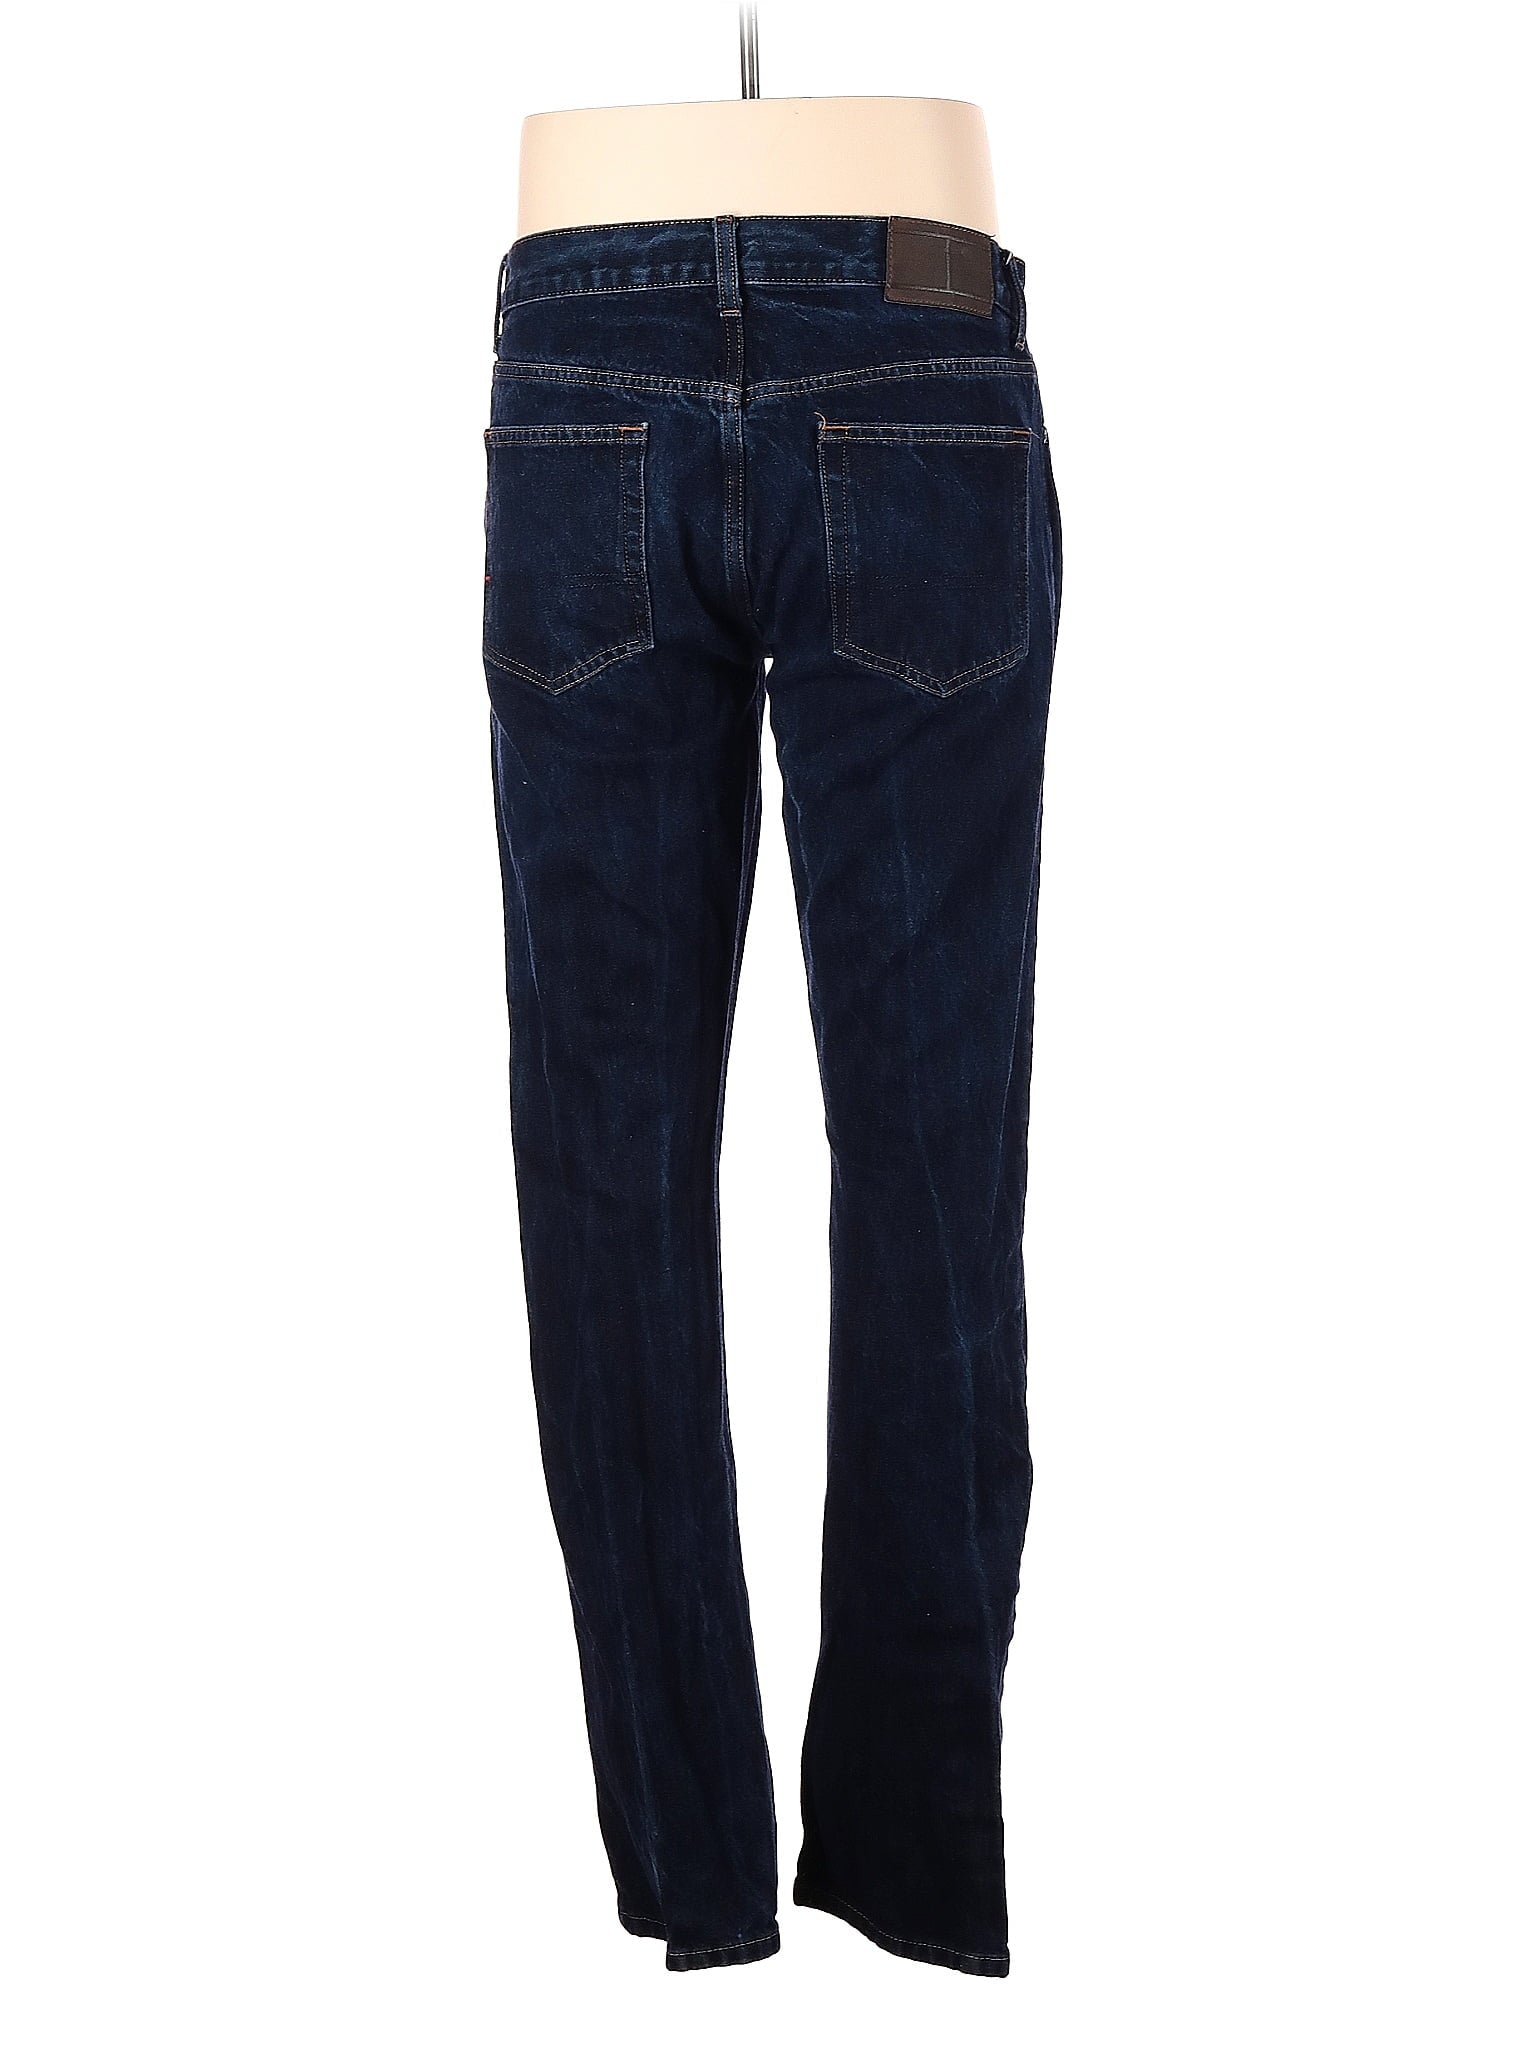 Jeans size - 33 (W33 L34)